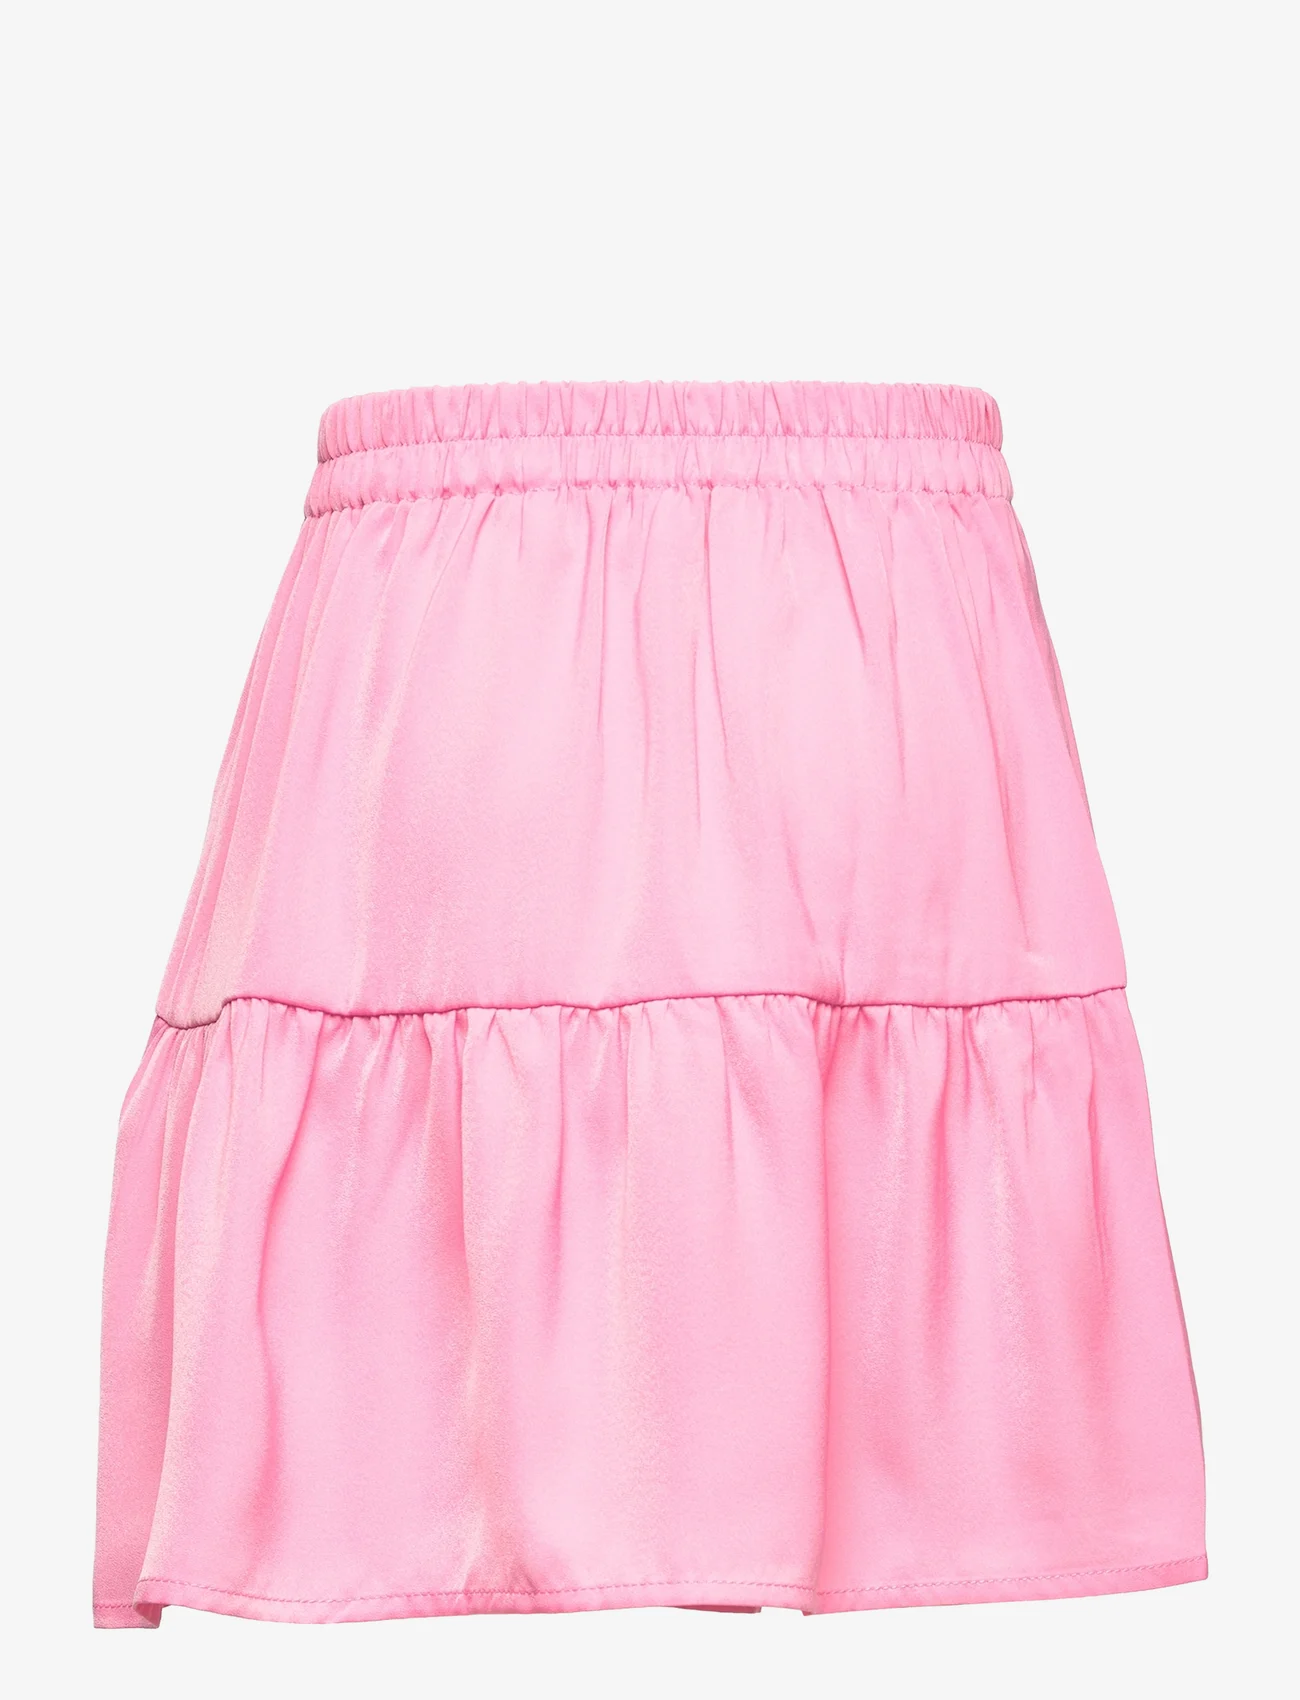 Rosemunde Kids - Skirt - korta kjolar - bubblegum pink - 1